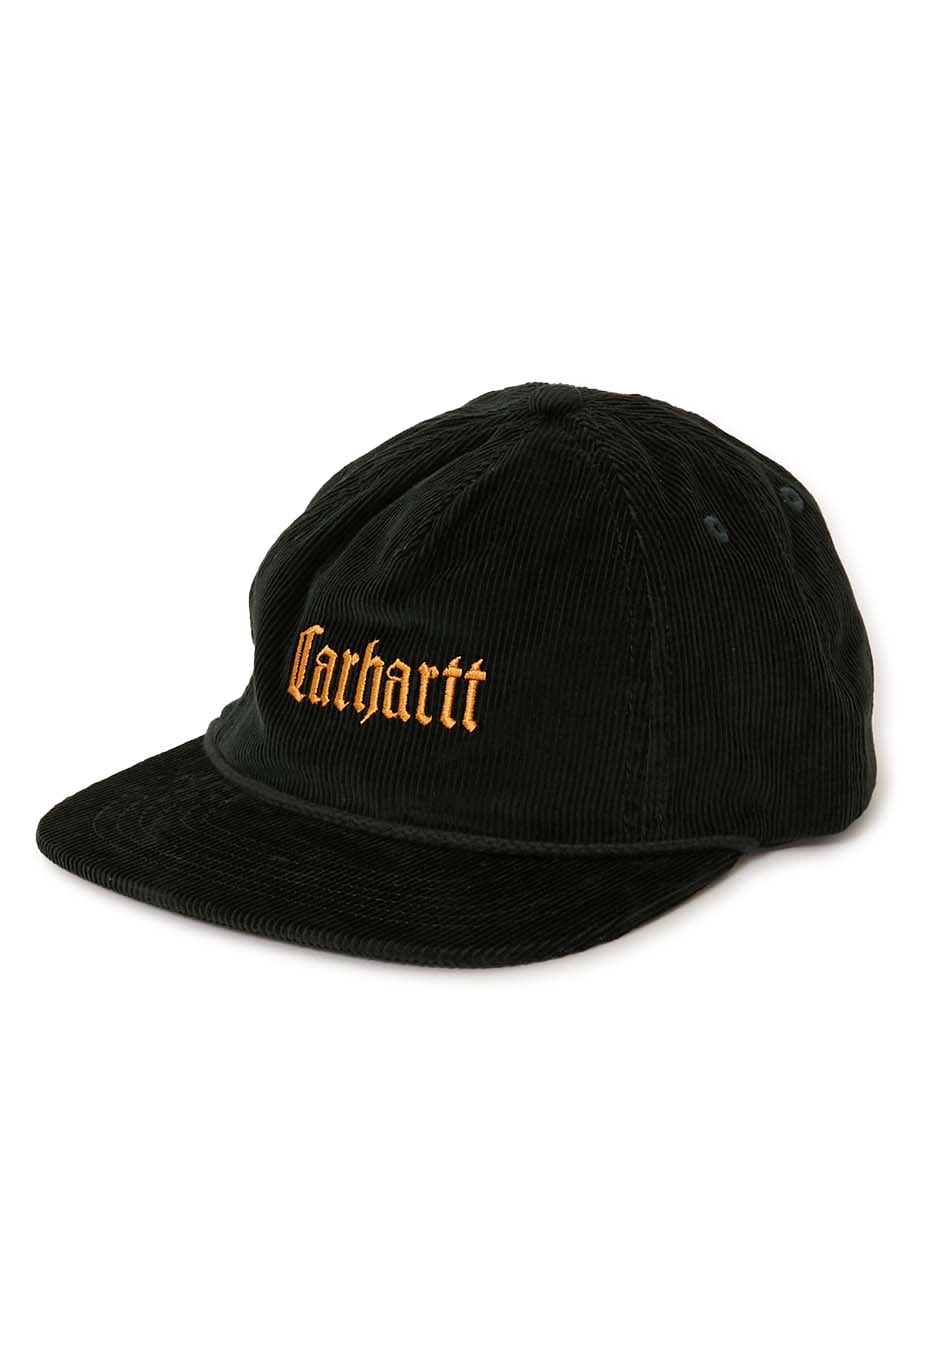 CARHARTT WIP LETTERMAN CAP